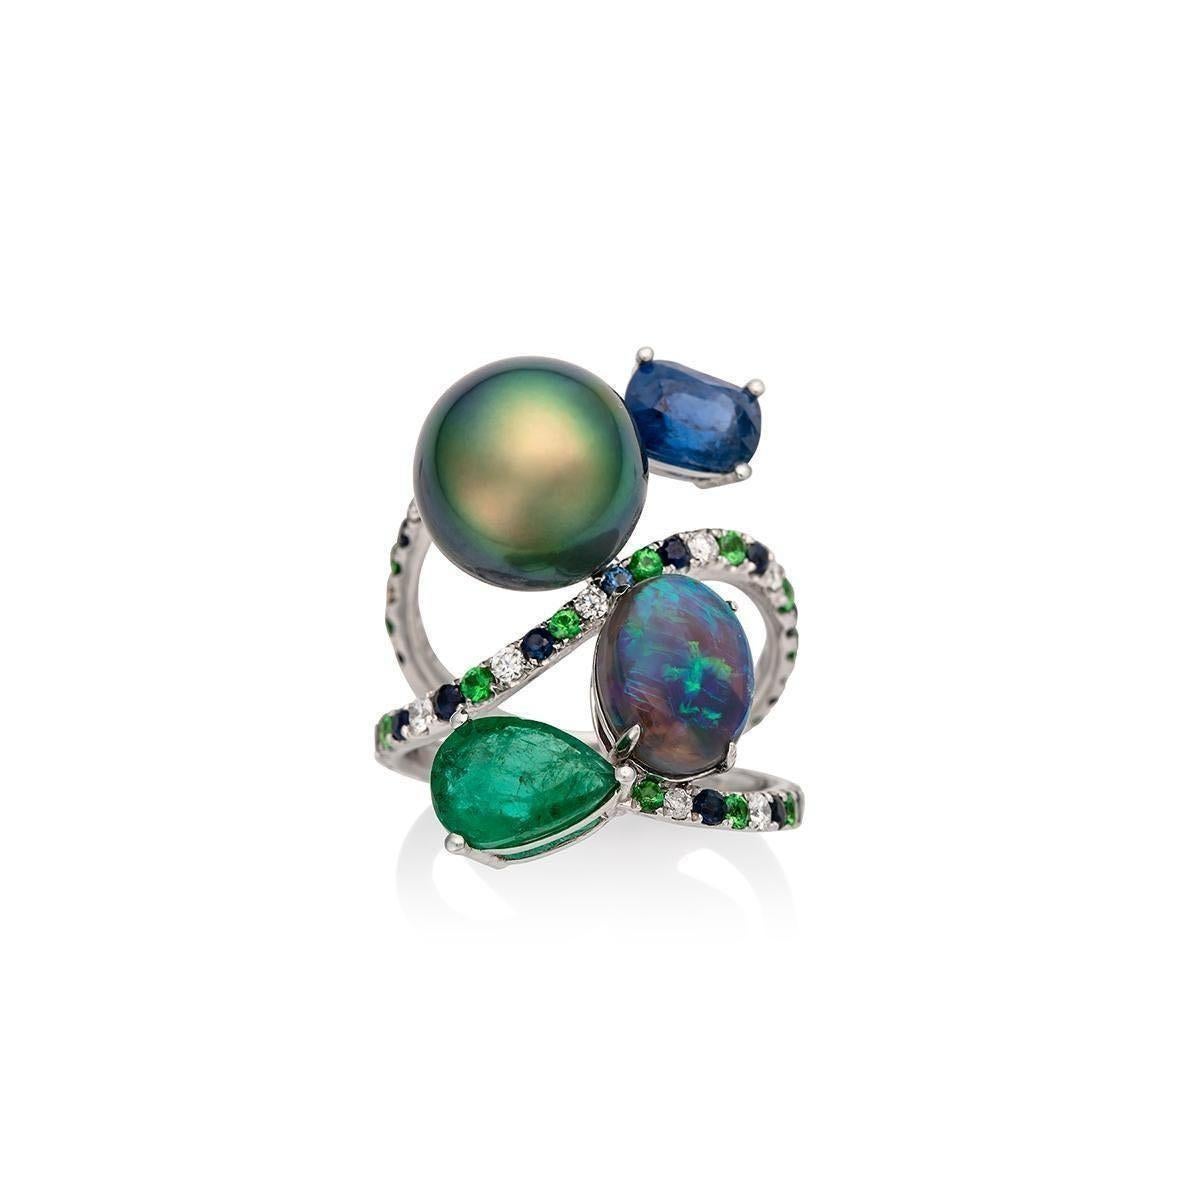 Dieses Design ist von der Feder eines Pfaus inspiriert. Die Kombination aus grüner Tahiti-Pfau-Perle, blauem und grünem schwarzem Opal, blauem Saphir und grünem Smaragd, die sich zwischen Bändern aus Saphiren, Diamanten und Tsavoriten verflechten,